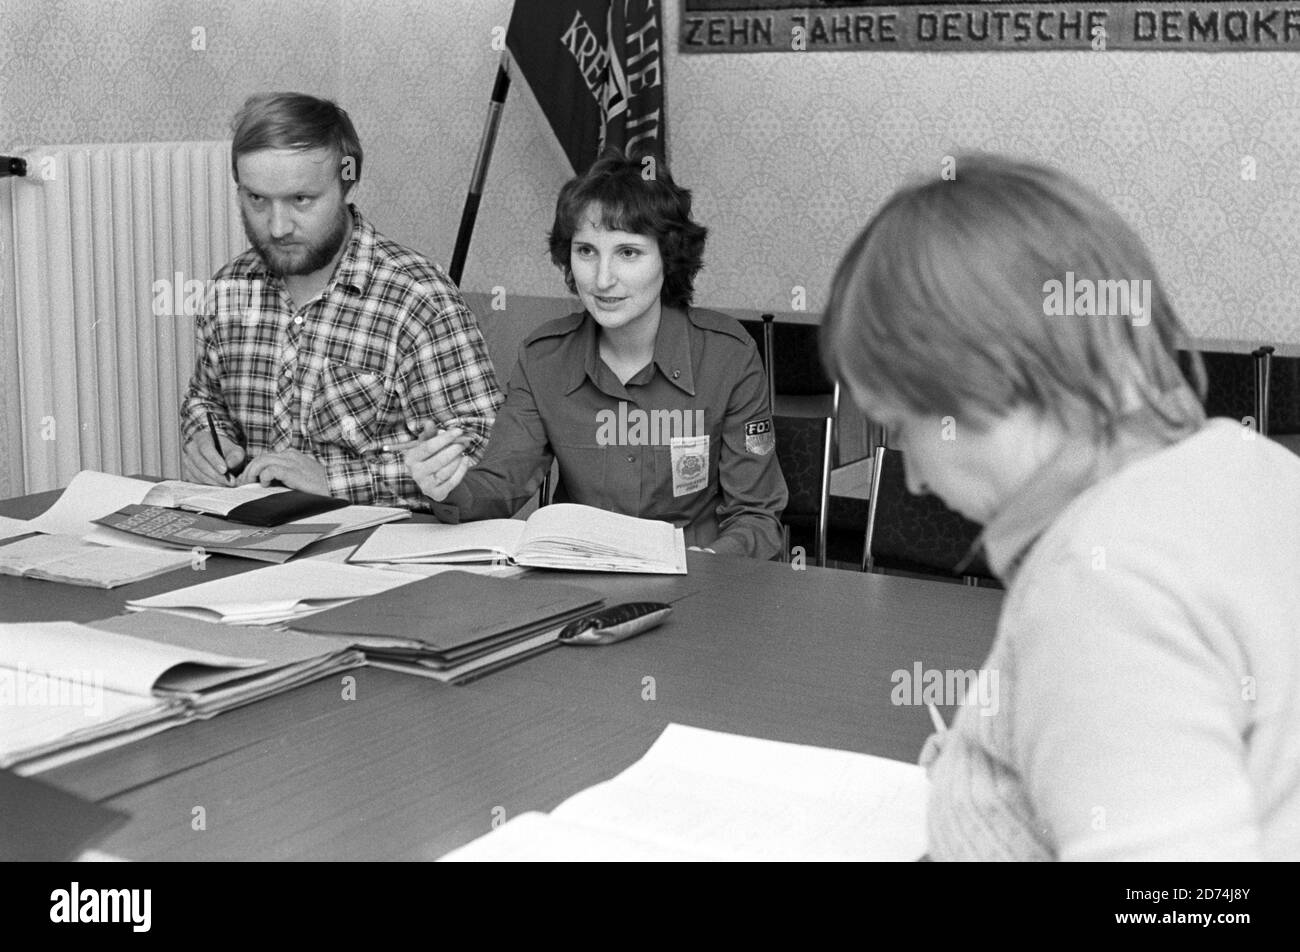 15 novembre 1984, Saxe, Eilenburg: En novembre 1984, une réunion est tenue dans le district de la direction de la Jeunesse allemande libre (FDJ), certains d'entre eux en vêtements FDJ (chemise bleue). Date exacte d'admission inconnue. Photo: Volkmar Heinz/dpa-Zentralbild/ZB Banque D'Images